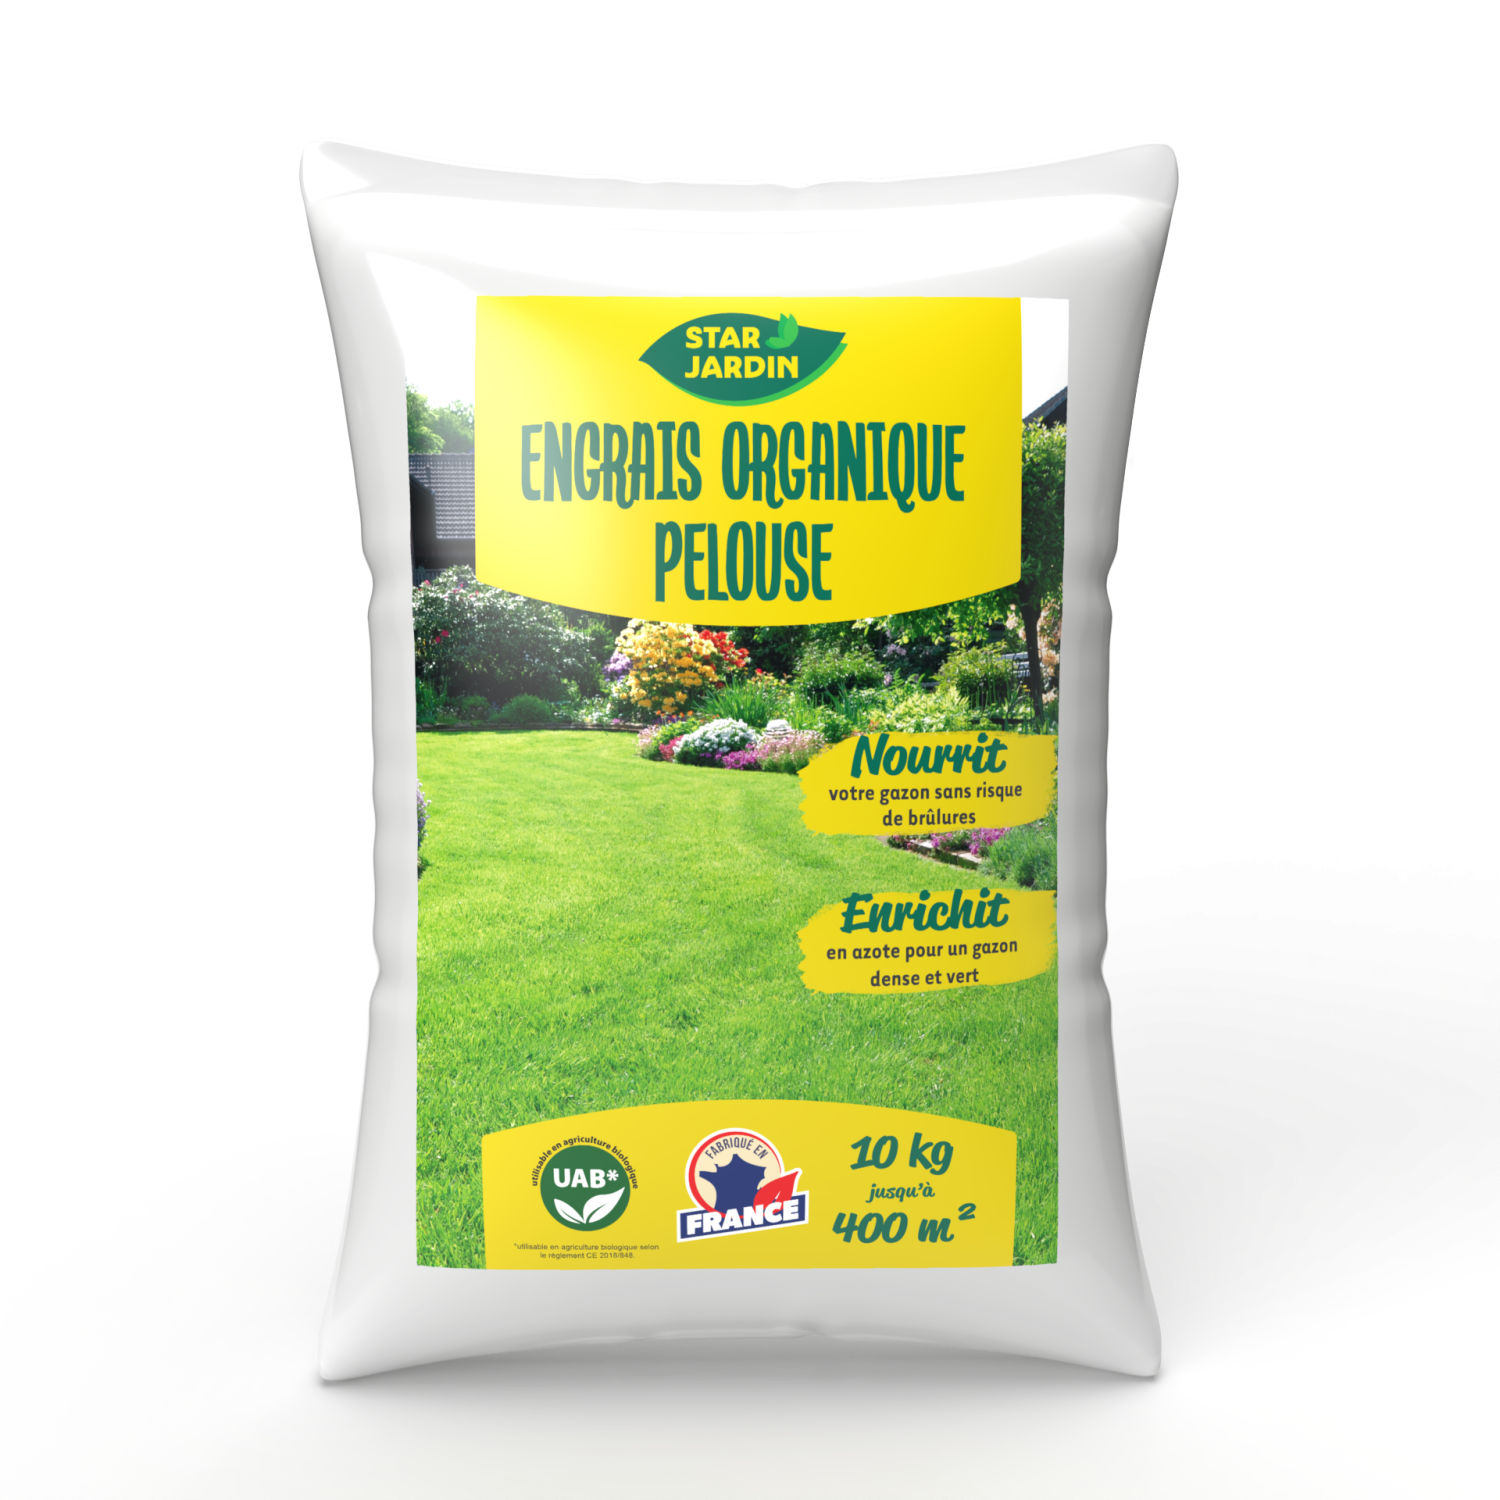 Engrais pour pelouse Osmocote EXTRA longue durée - Substral® - 5 kg - –  Garden Seeds Market